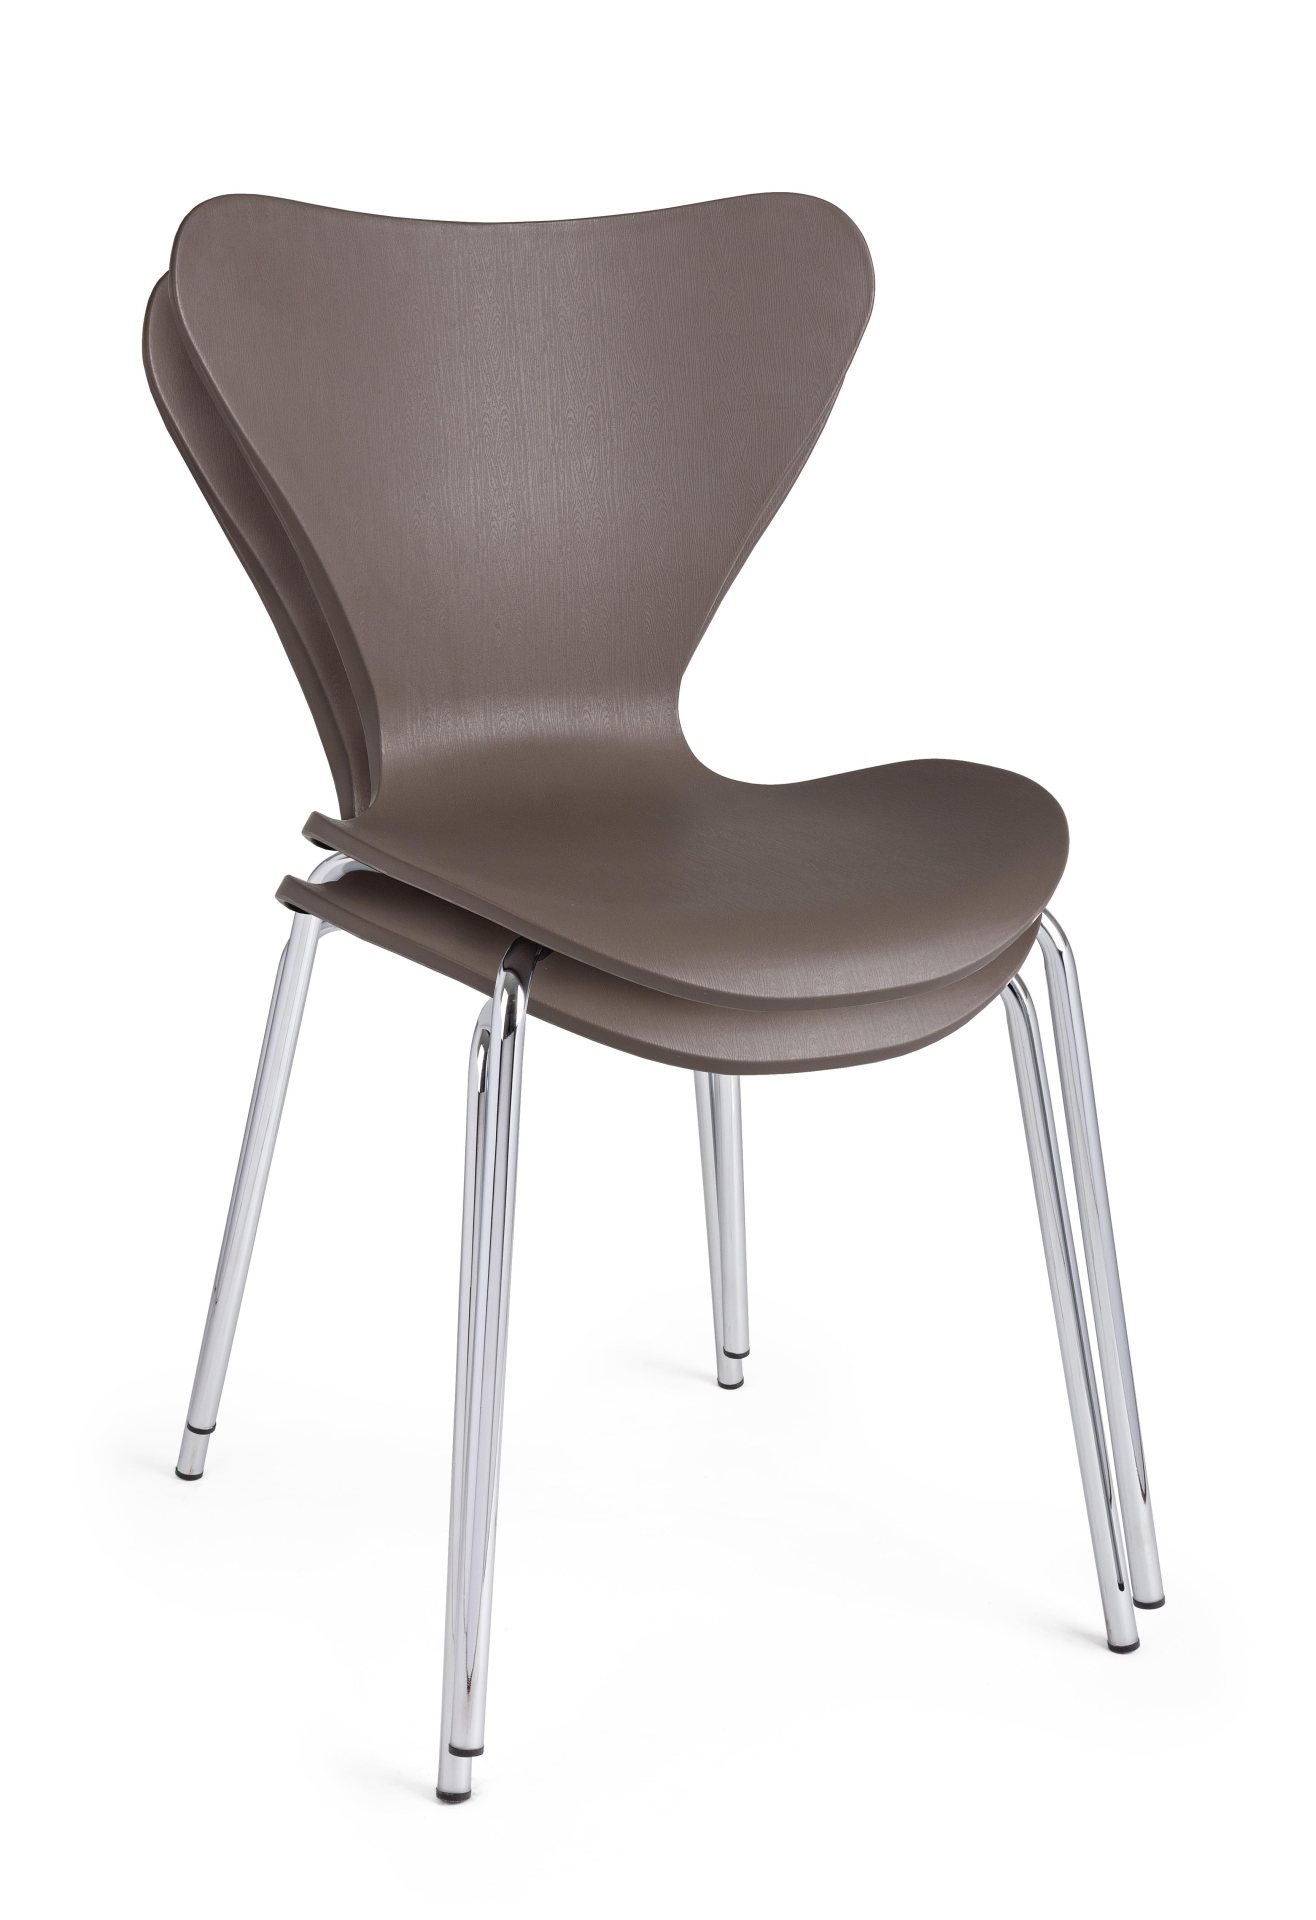 Der Stuhl Tessa überzeugt mit seinem modernem Design. Gefertigt wurde der Stuhl aus Kunststoff, welcher einen braunen Farbton besitzt. Das Gestell ist aus Metall und ist in einer silbernen Farbe. Die Sitzhöhe beträgt 45 cm.